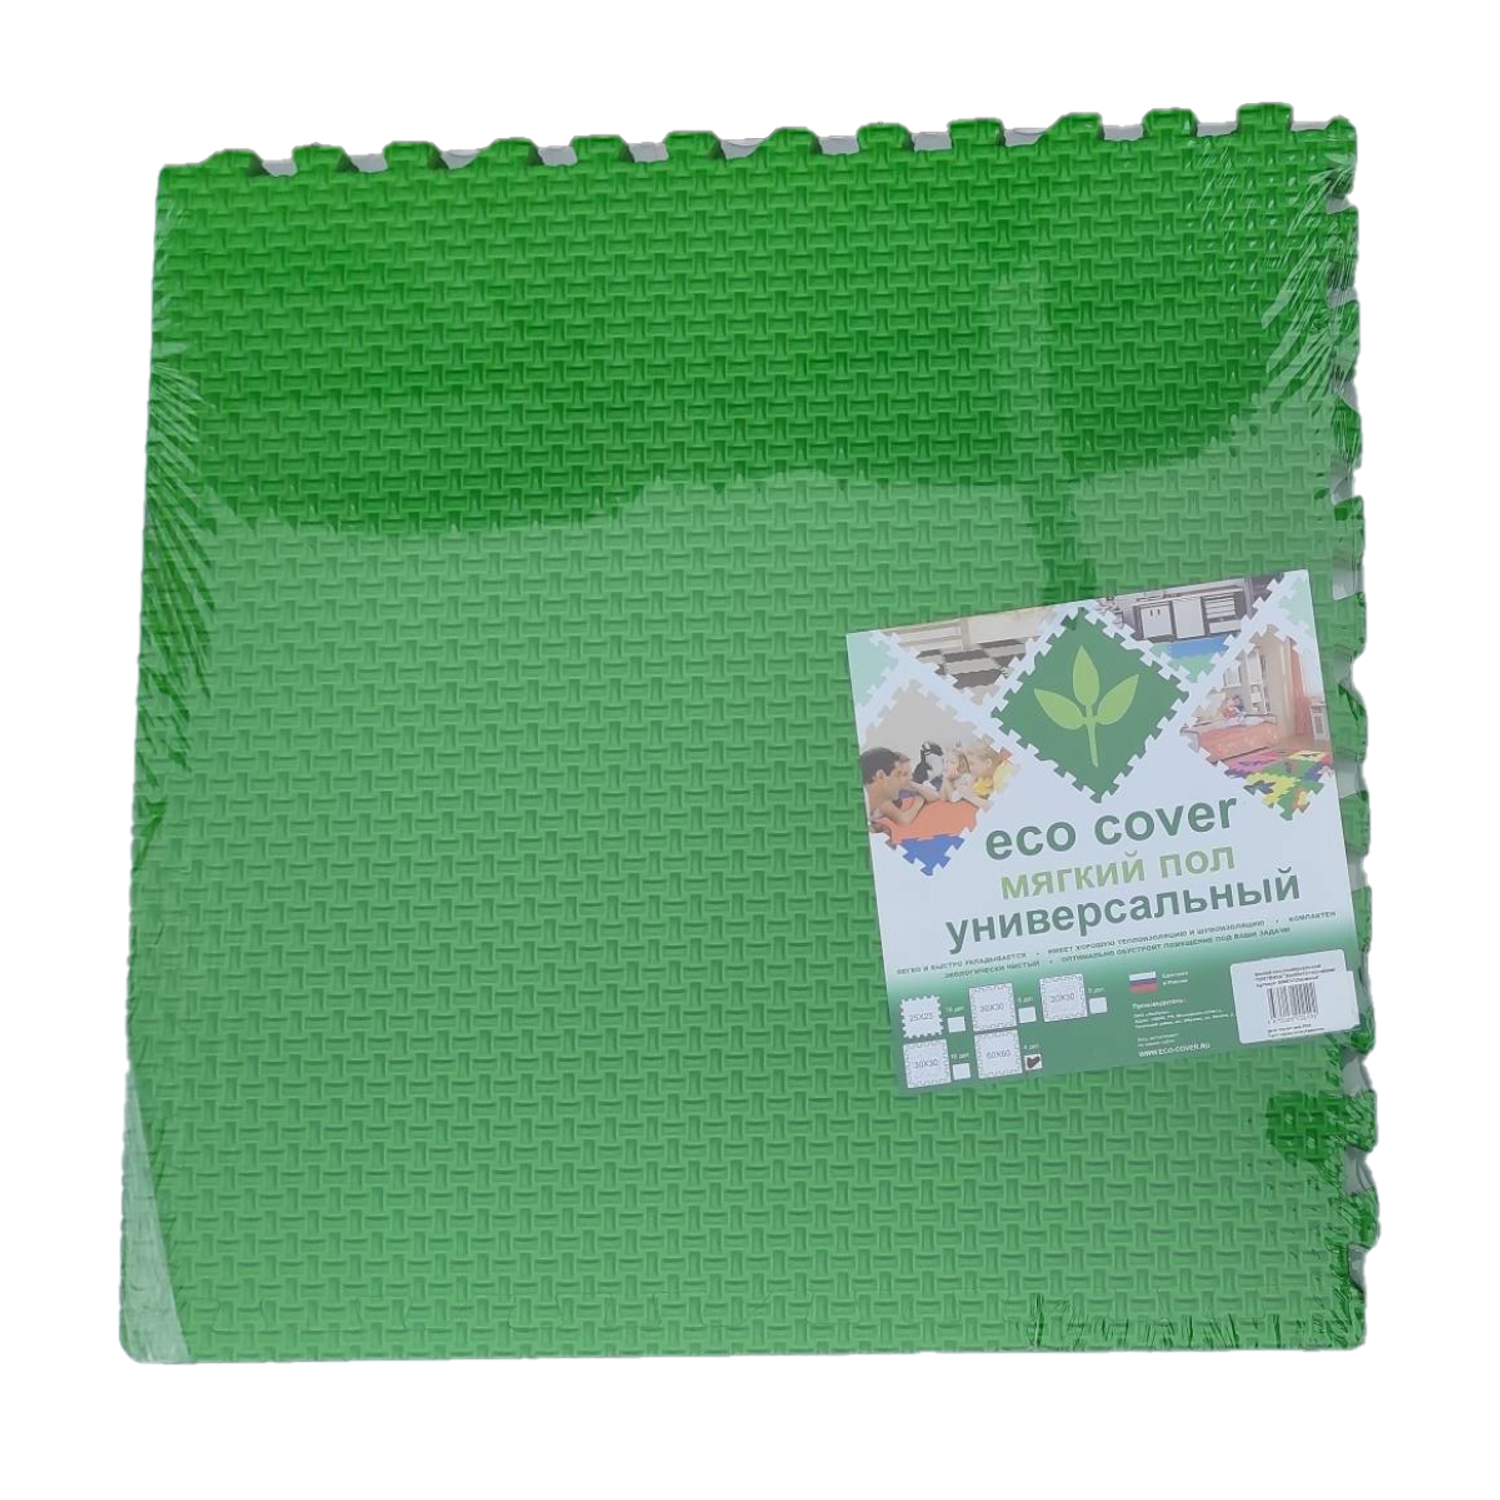 Развивающий детский коврик Eco cover игровой мягкий пол для ползания Плетенка 60х60 см. Зеленый 4 детали - фото 2